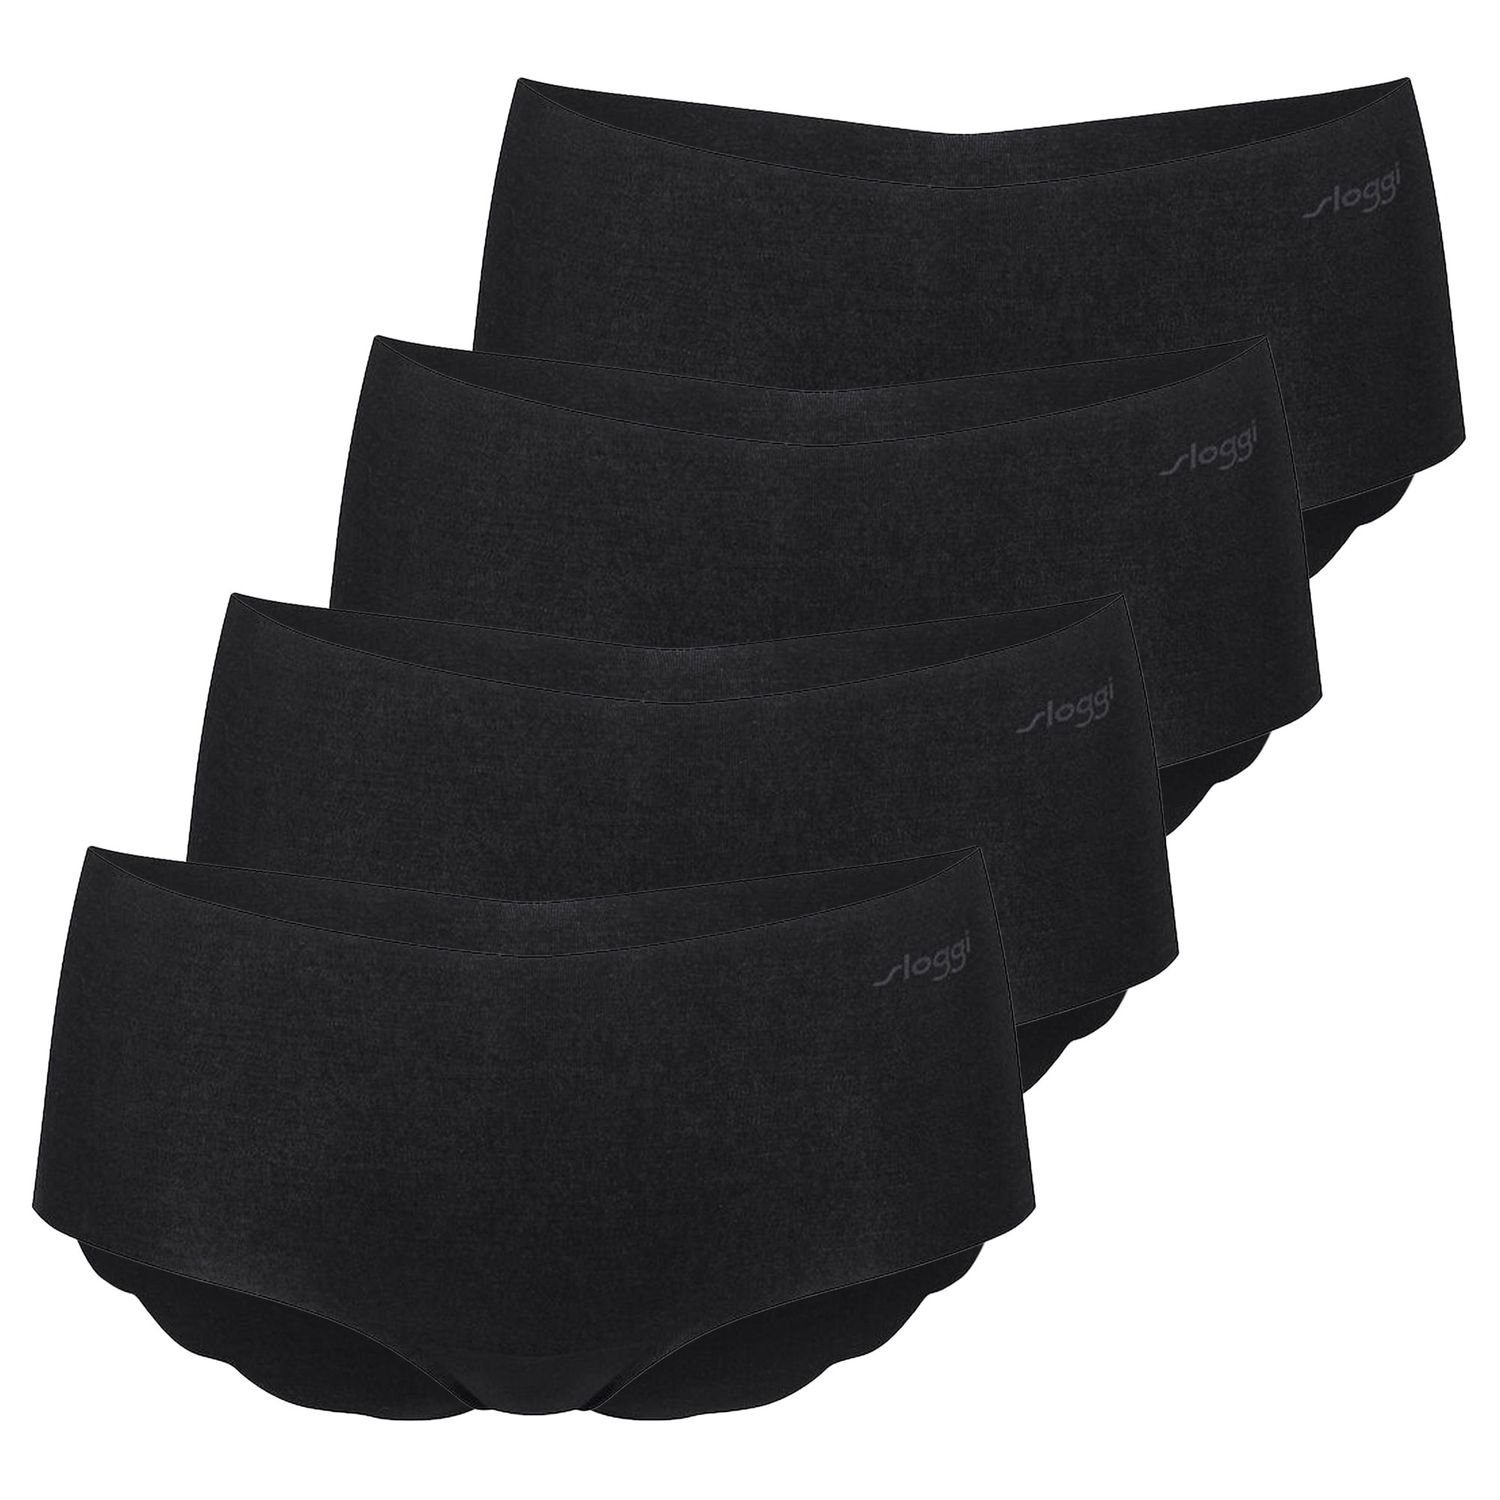 Modal Panty (4-St) Wellenkante, Sloggi Pack Abdrücke, keine 4er saumlos, zero im